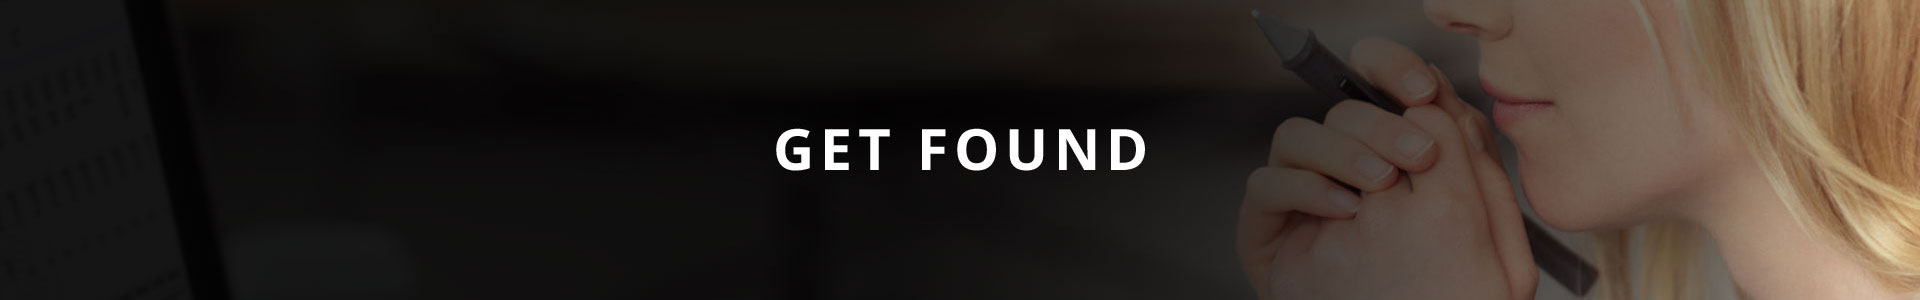 Get Found